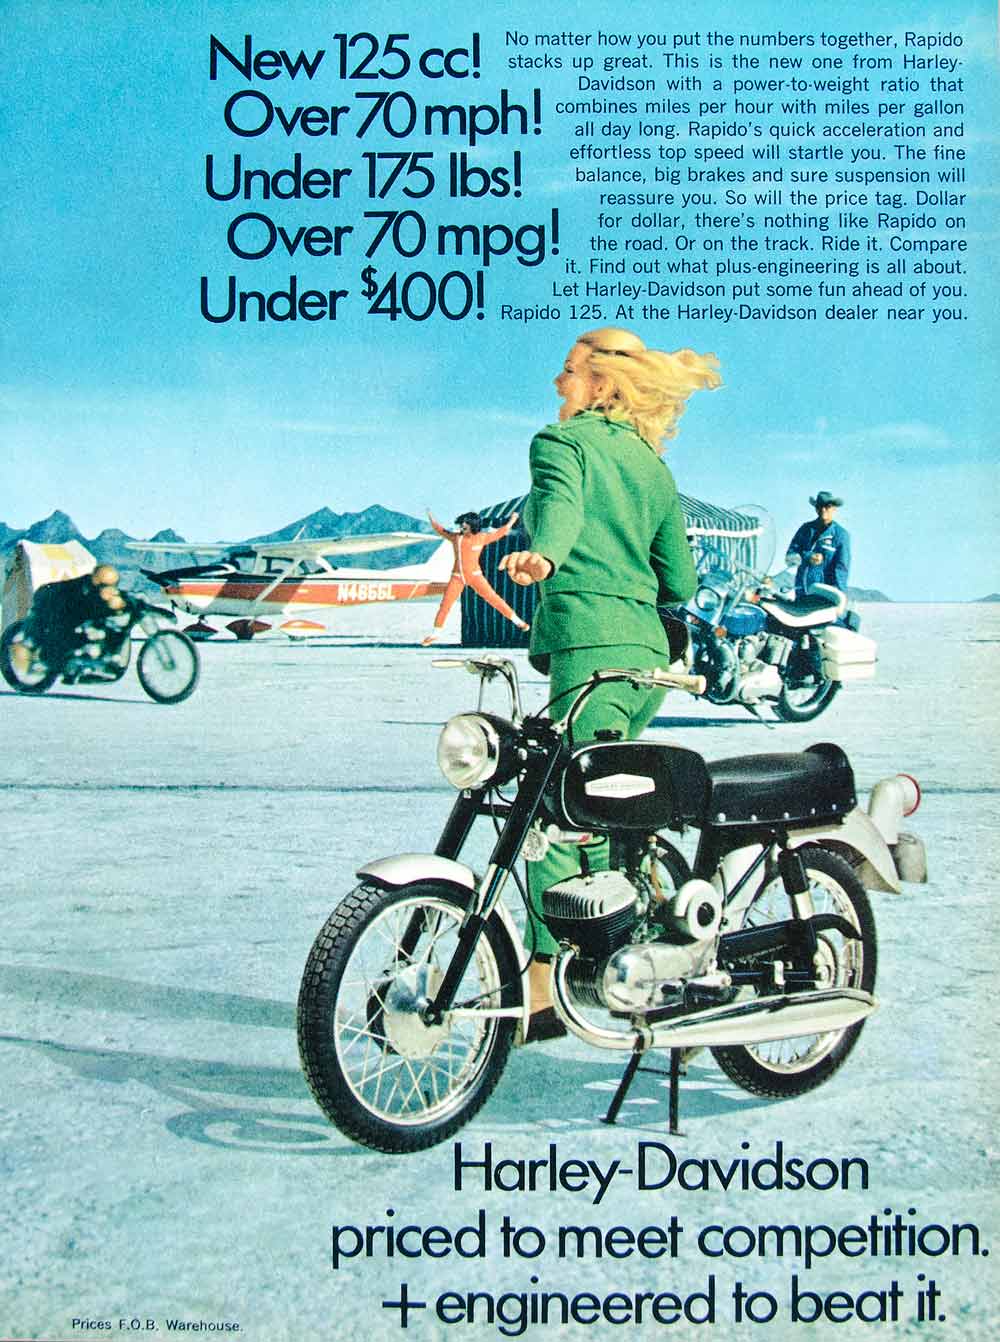 1968 Ad Vintage Harley-Davidson Rapido 125 cc Motorcycle Motor Bike Price YHR3